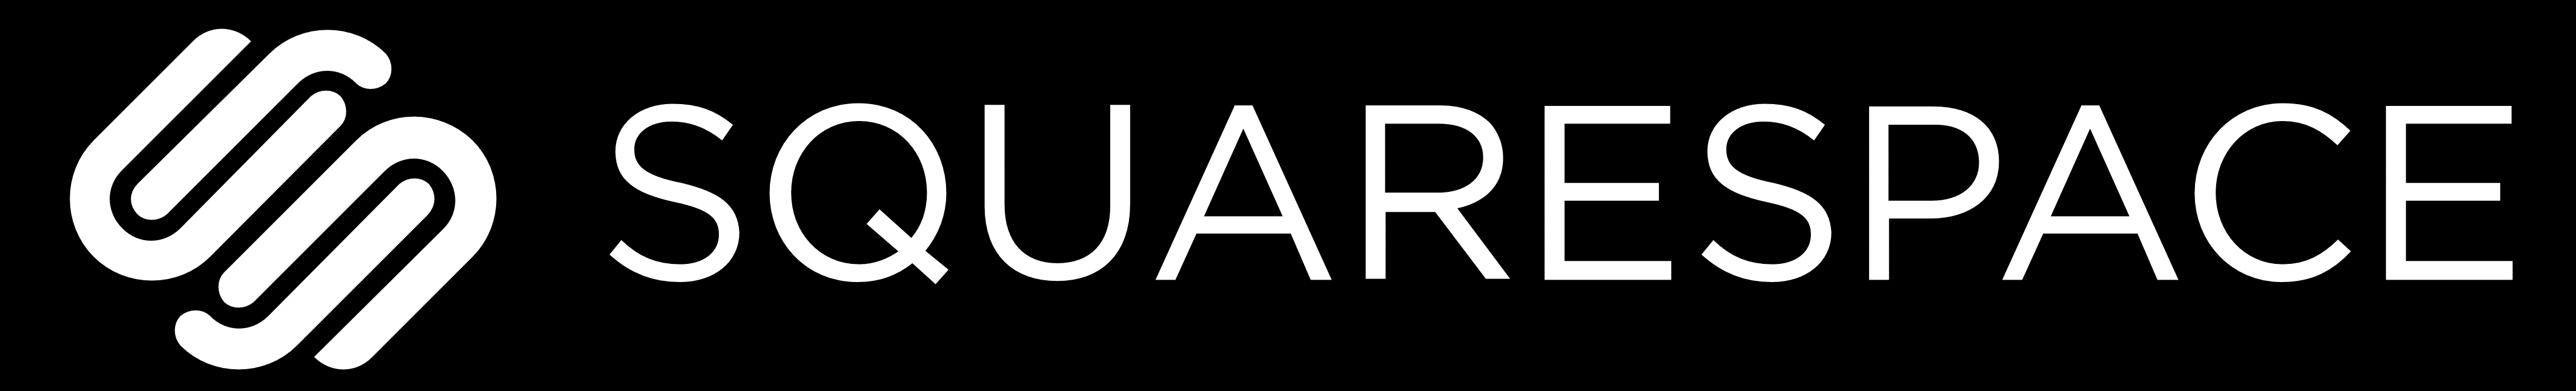 Squarespace – Logos Download